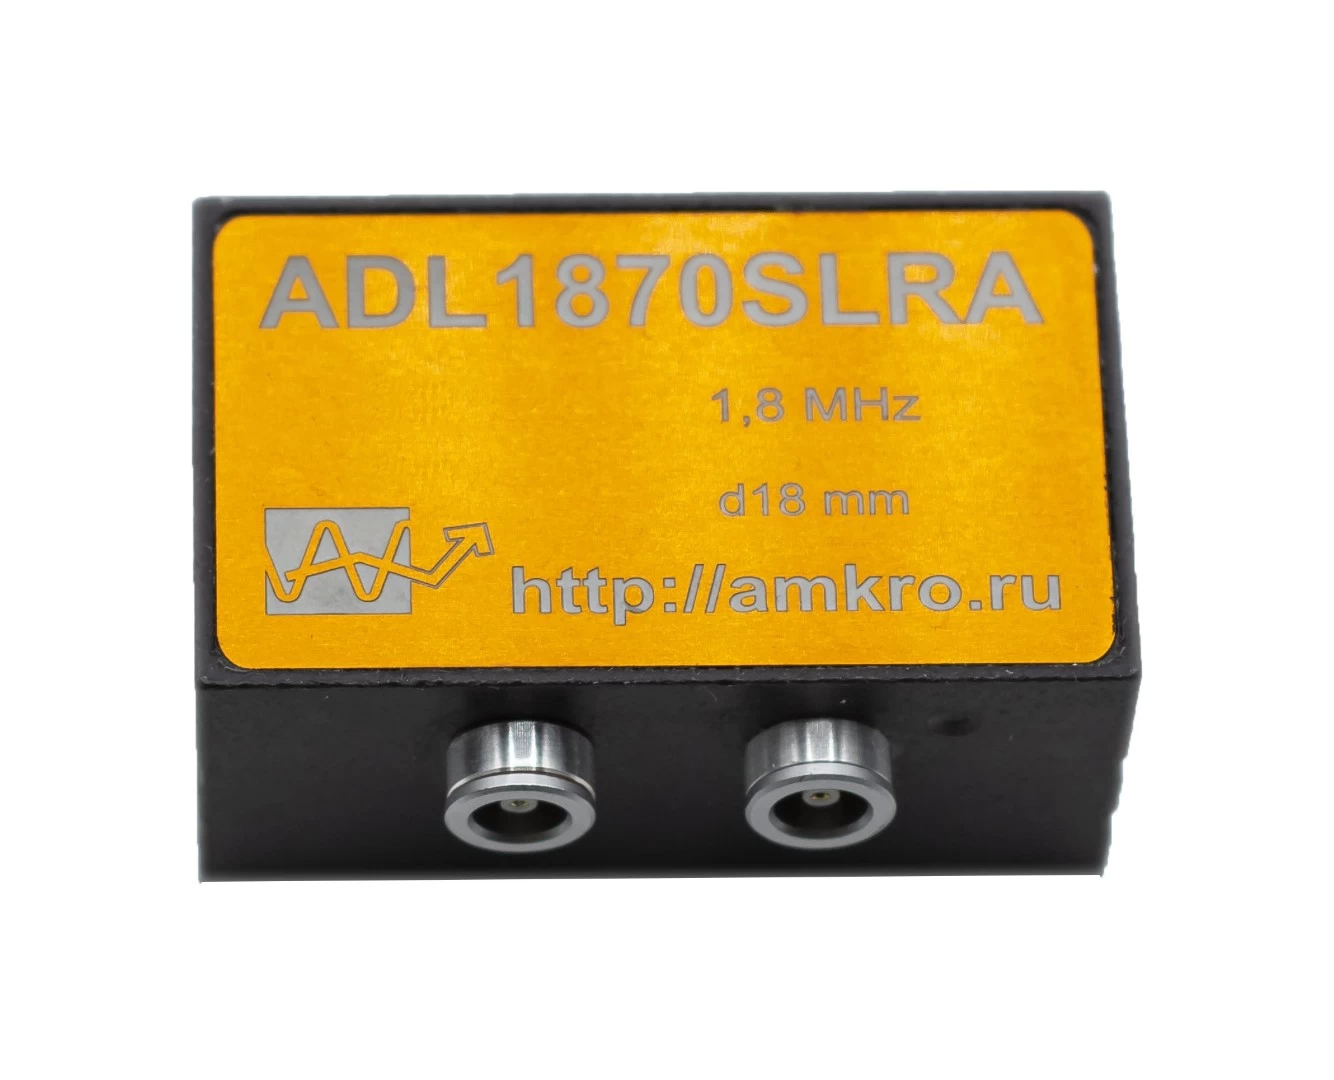 ADL1870SLRA (аналог ИЦ-70) наклонный р/с преобразователь 1,8 МГц - 2